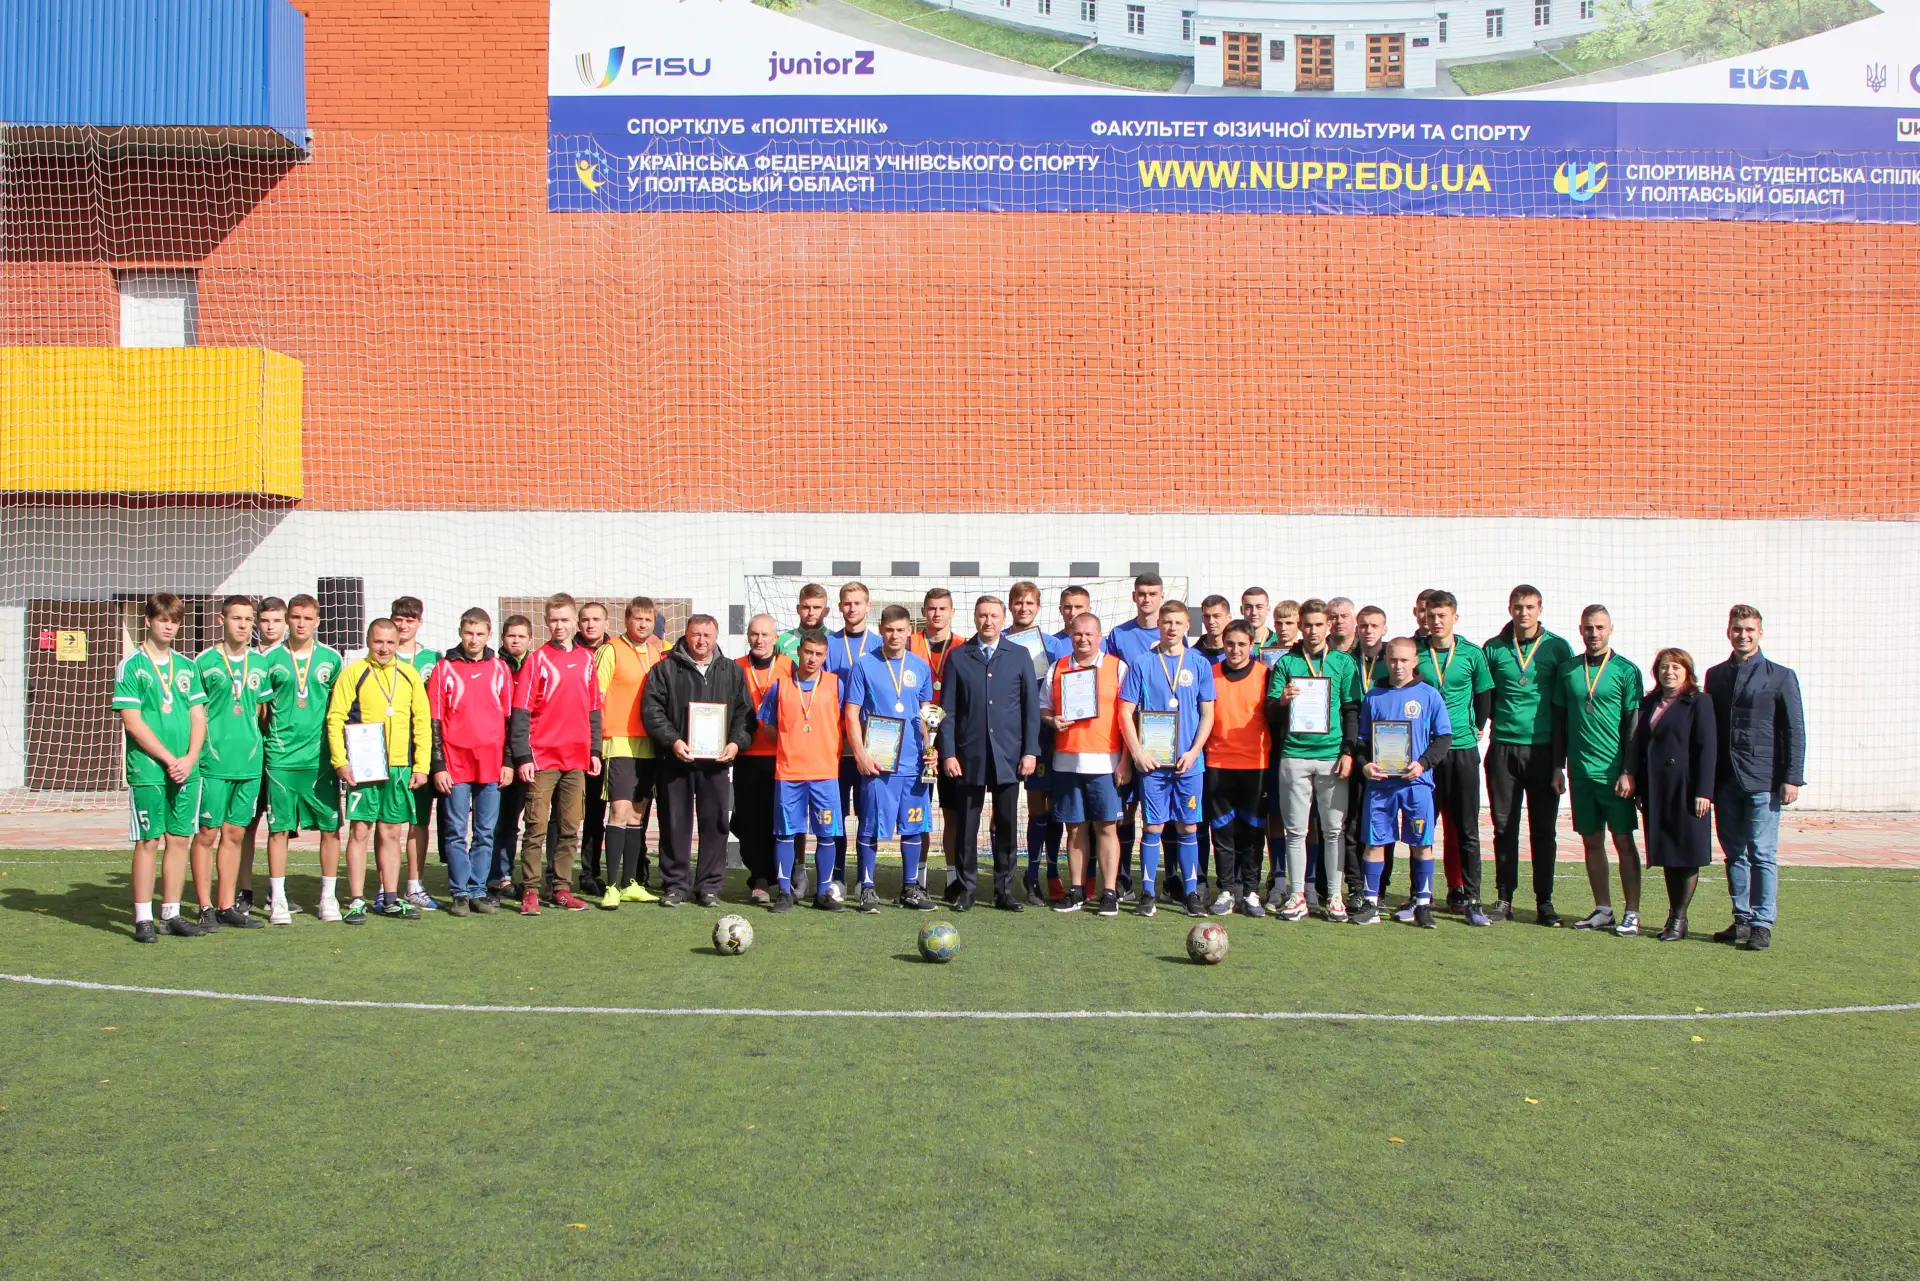 Команда ННІ нафти і газу  вдруге стала володаркою  футбольного  «Кубку Співдружності»